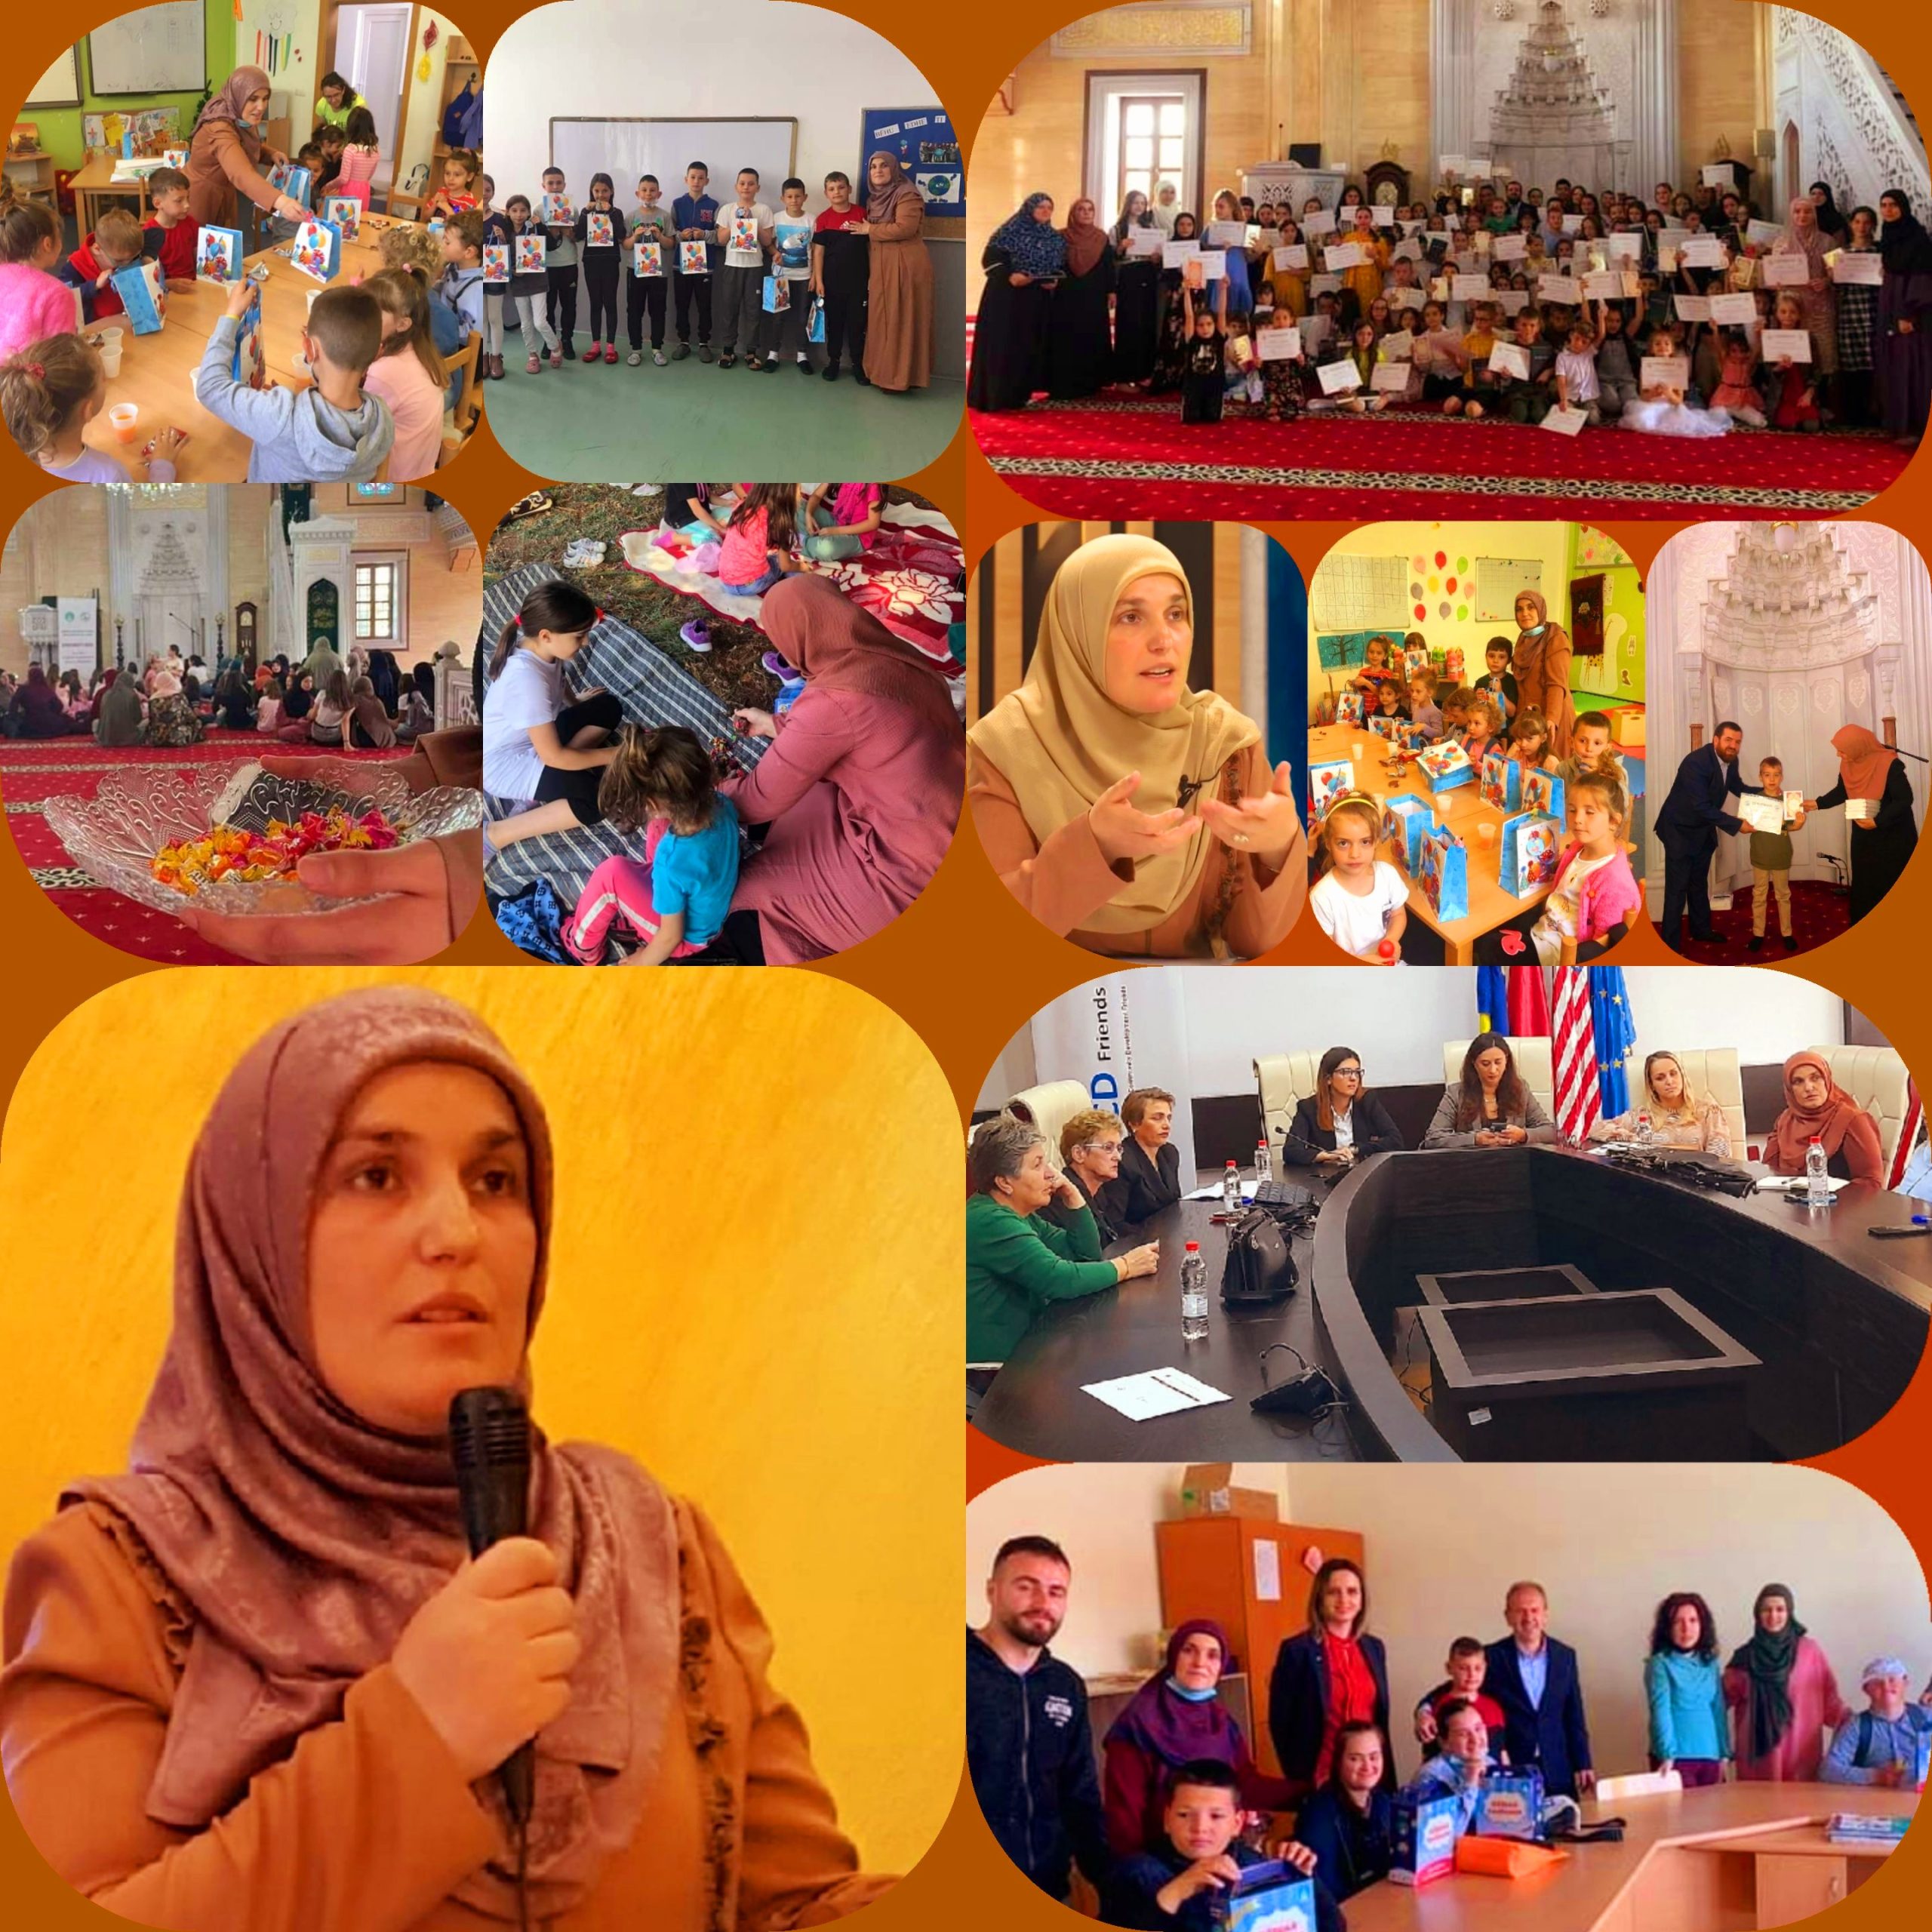 الداعية والمعلمة "أجيمي سوجويافا"، مسئولة قسم المرأة بالمشيخة الإسلامية في كوسوفا، عن منطقة ميتروفيستا، شمال البلاد.